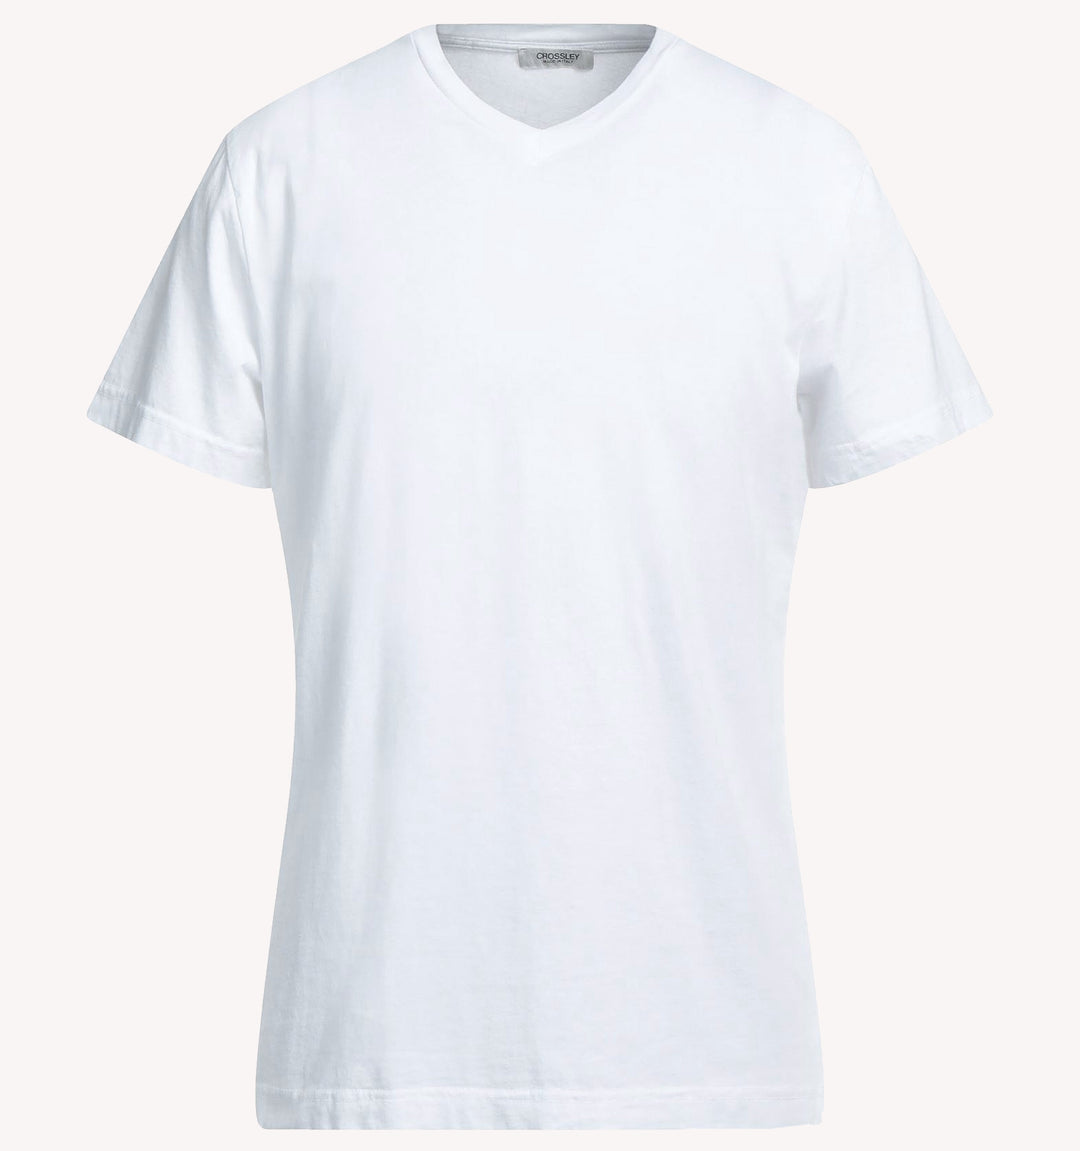 Crossley V-Neck T-Shirt in White